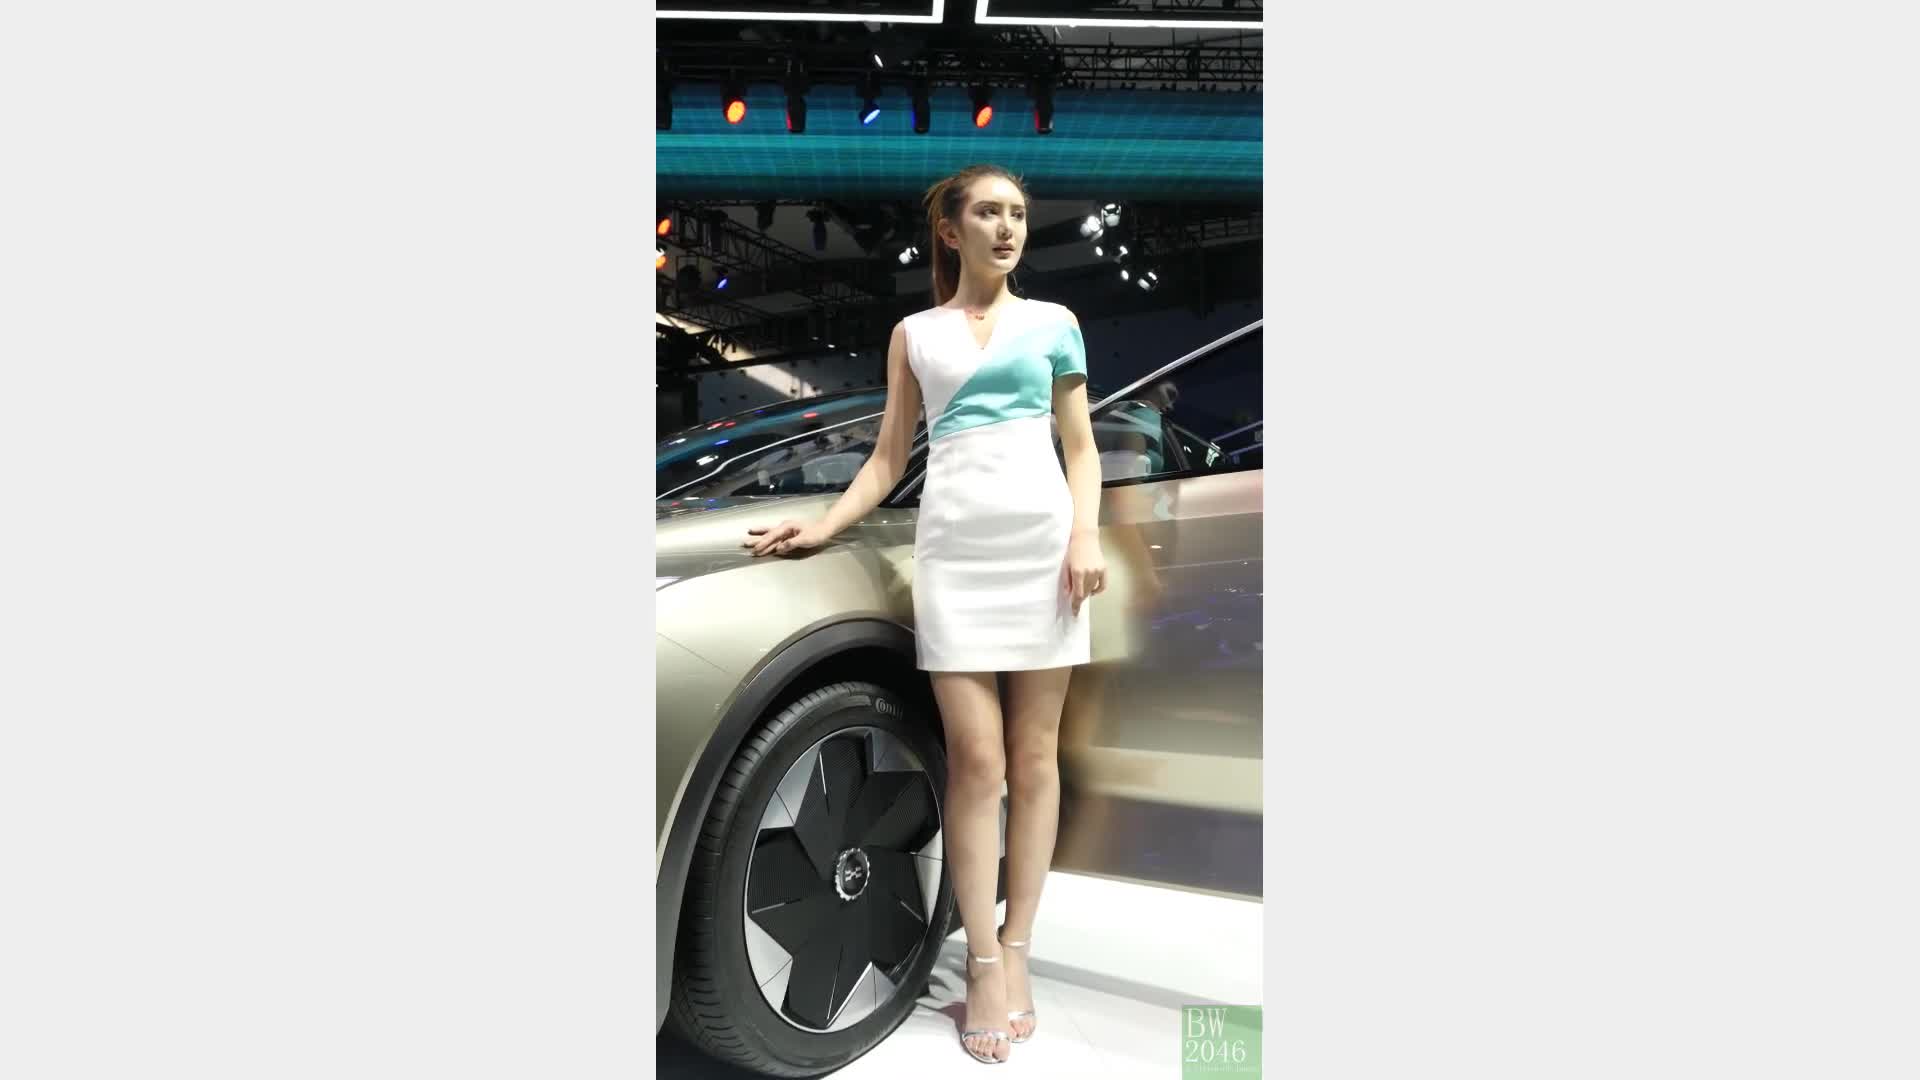 廣州汽車展  Auto Guangzhou 2019 - 車模 33 @ AIWAYS (AI ON THE WAY) 愛馳汽車 (Desktop Version)